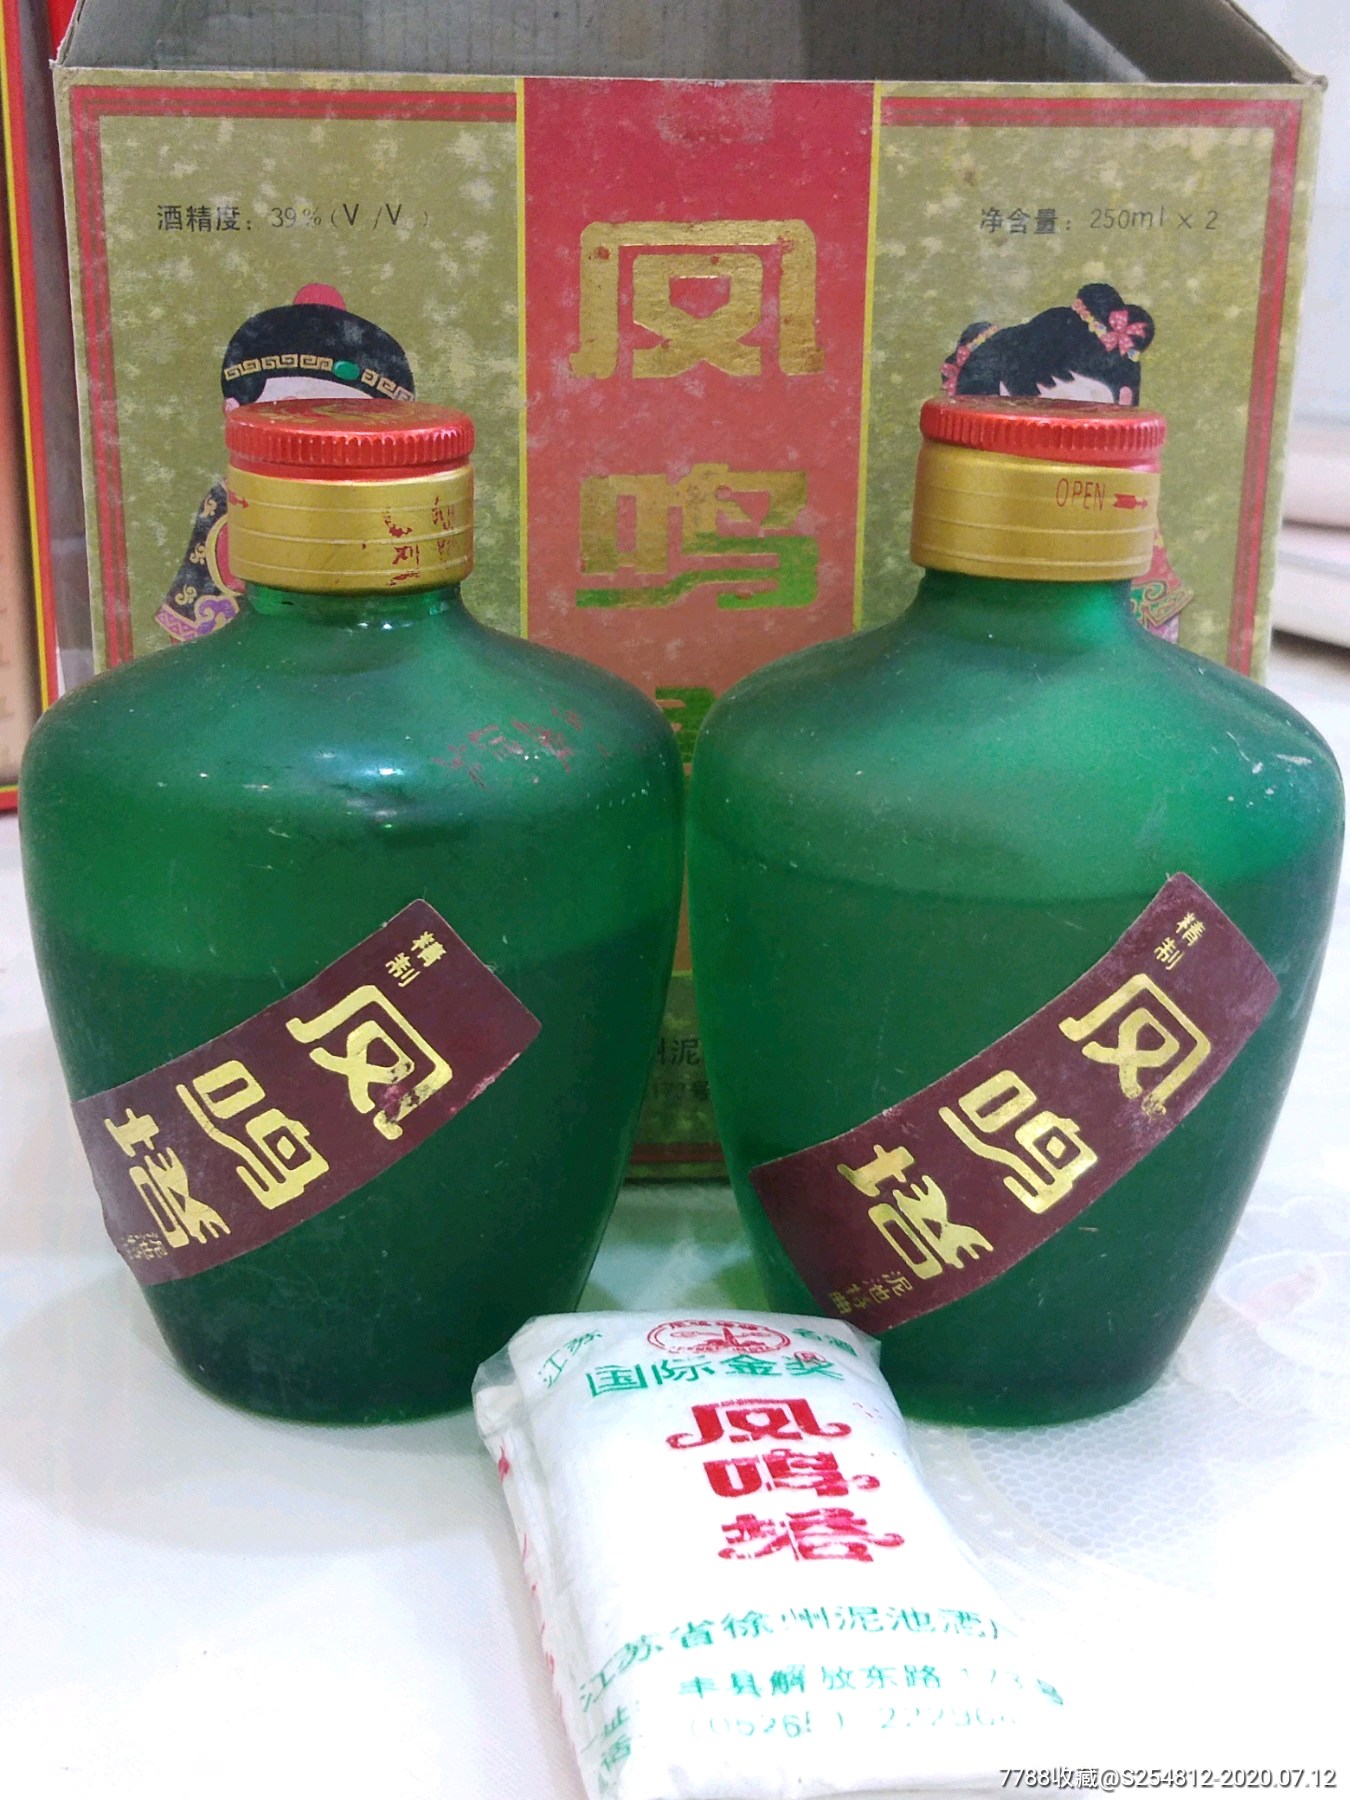 汉文化历史名酒,凤鸣塔泥池特曲双胞胎